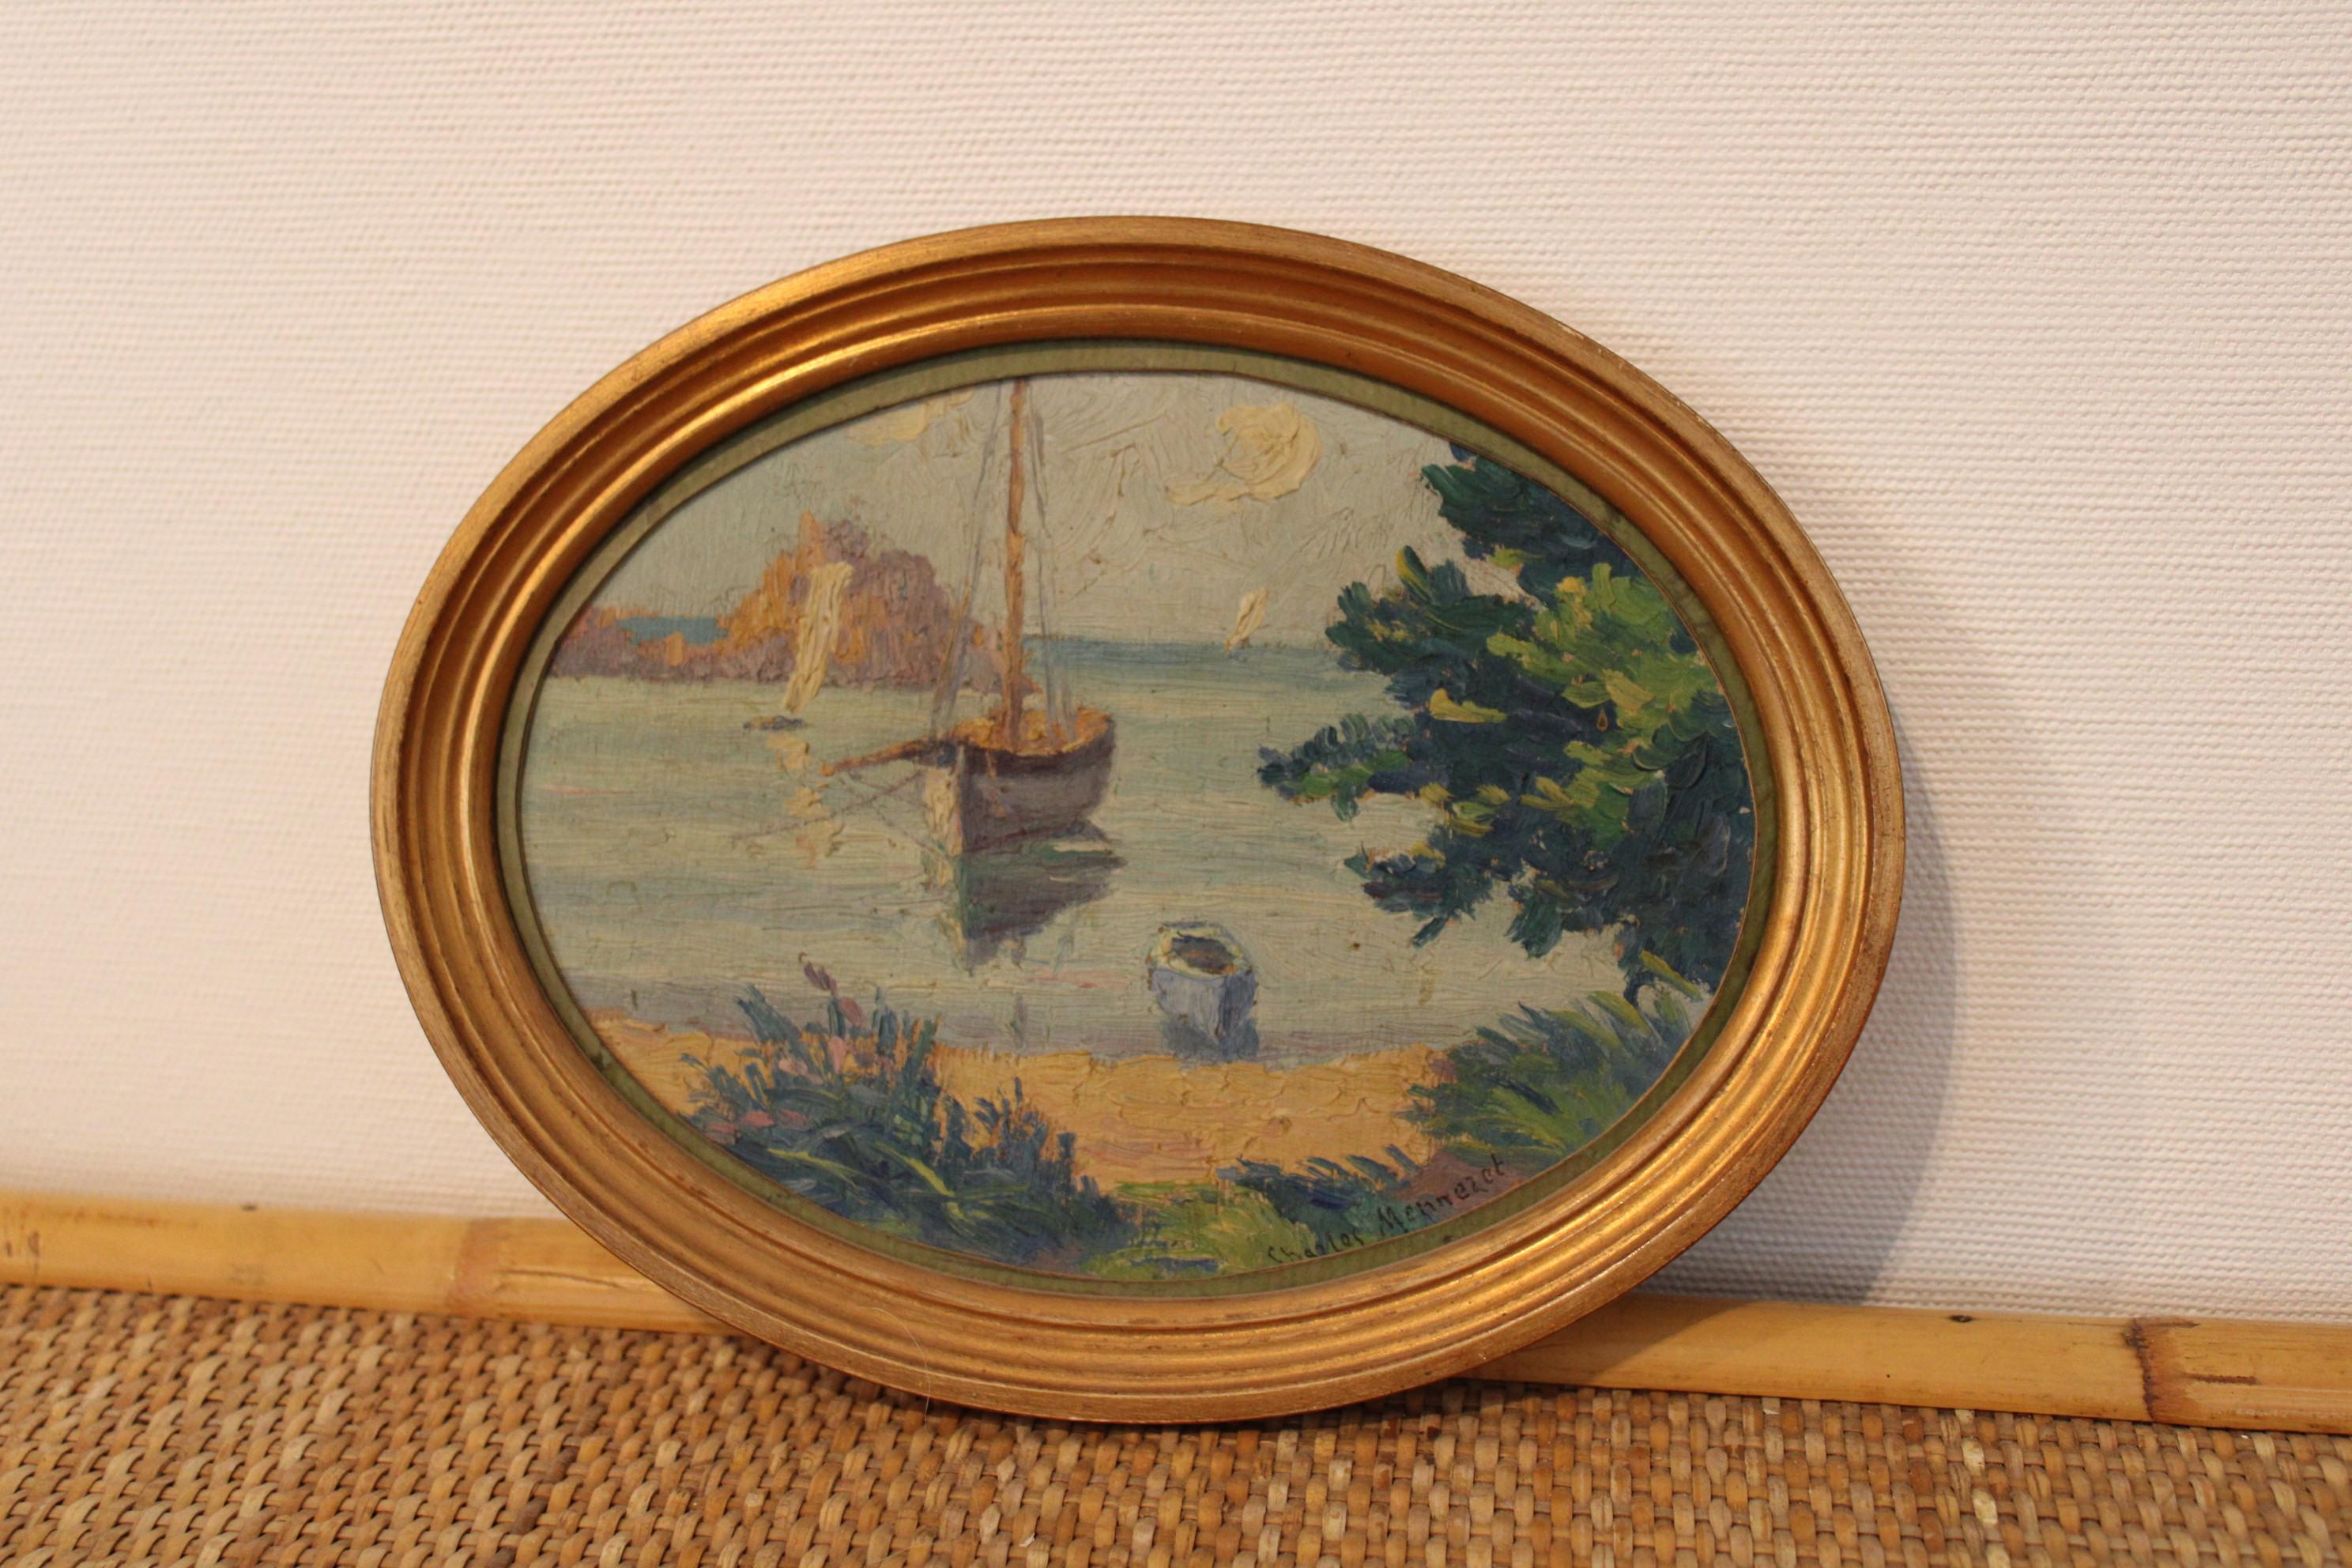 Peinture de Charles Menneret (1876-1946)
Représente un paysage français, dans la région Bretagne
Signé sur le tableau 

Dimensions avec cadre : 24 x 19 x 2 cm
Dimensions de la peinture : 20 x 15 cm.
  